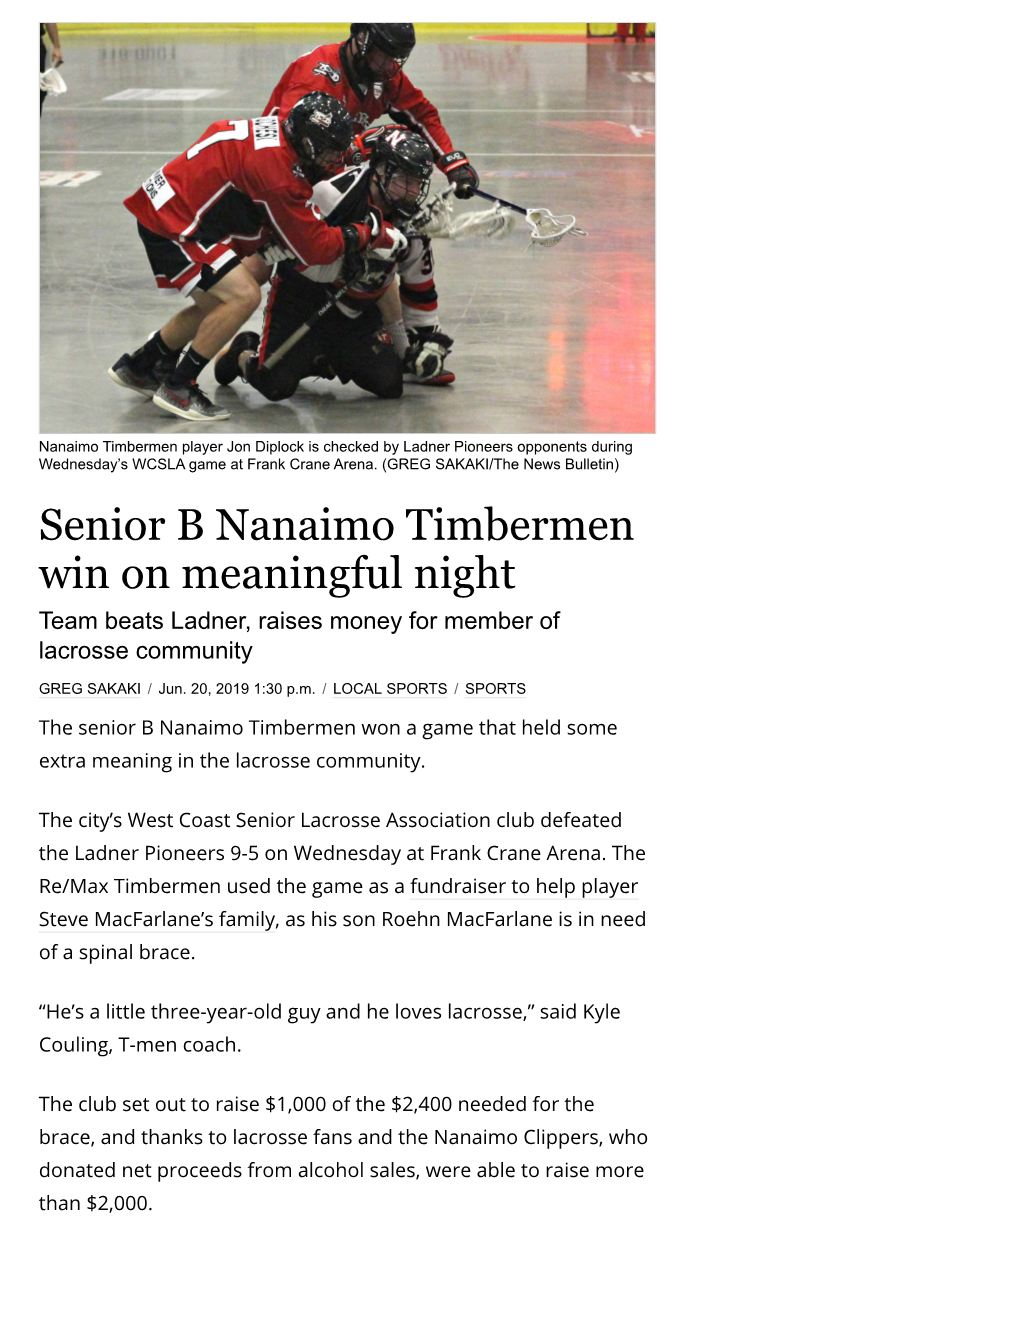 Senior B Nanaimo Timbermen Win on Meaningful Night Team Beats Ladner, Raises Money for Member of Lacrosse Community